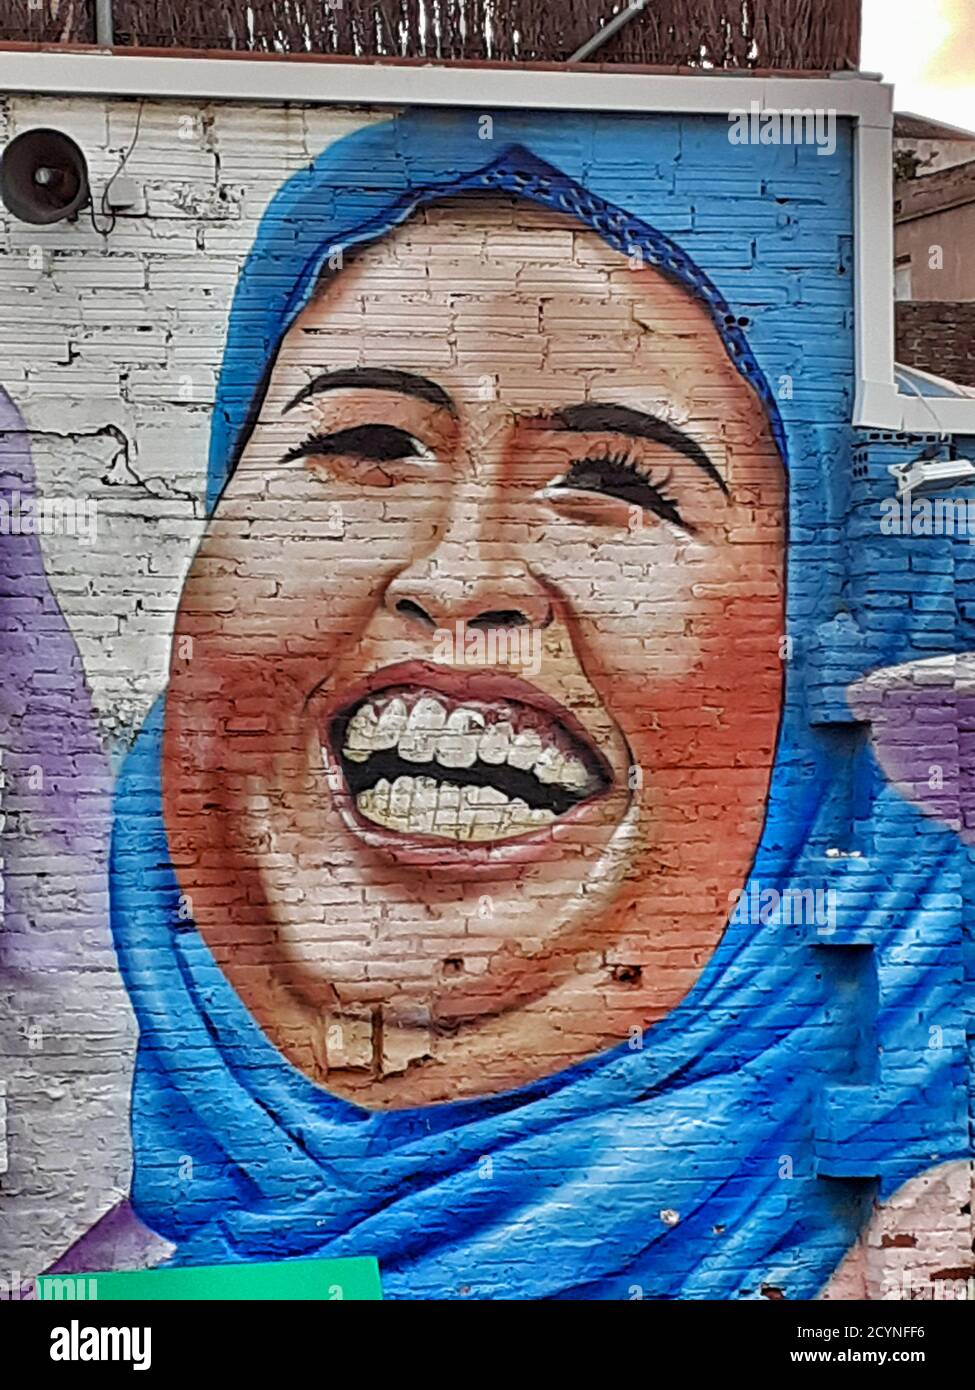 Graffiti of a muslim woman on a wall. Stock Photo